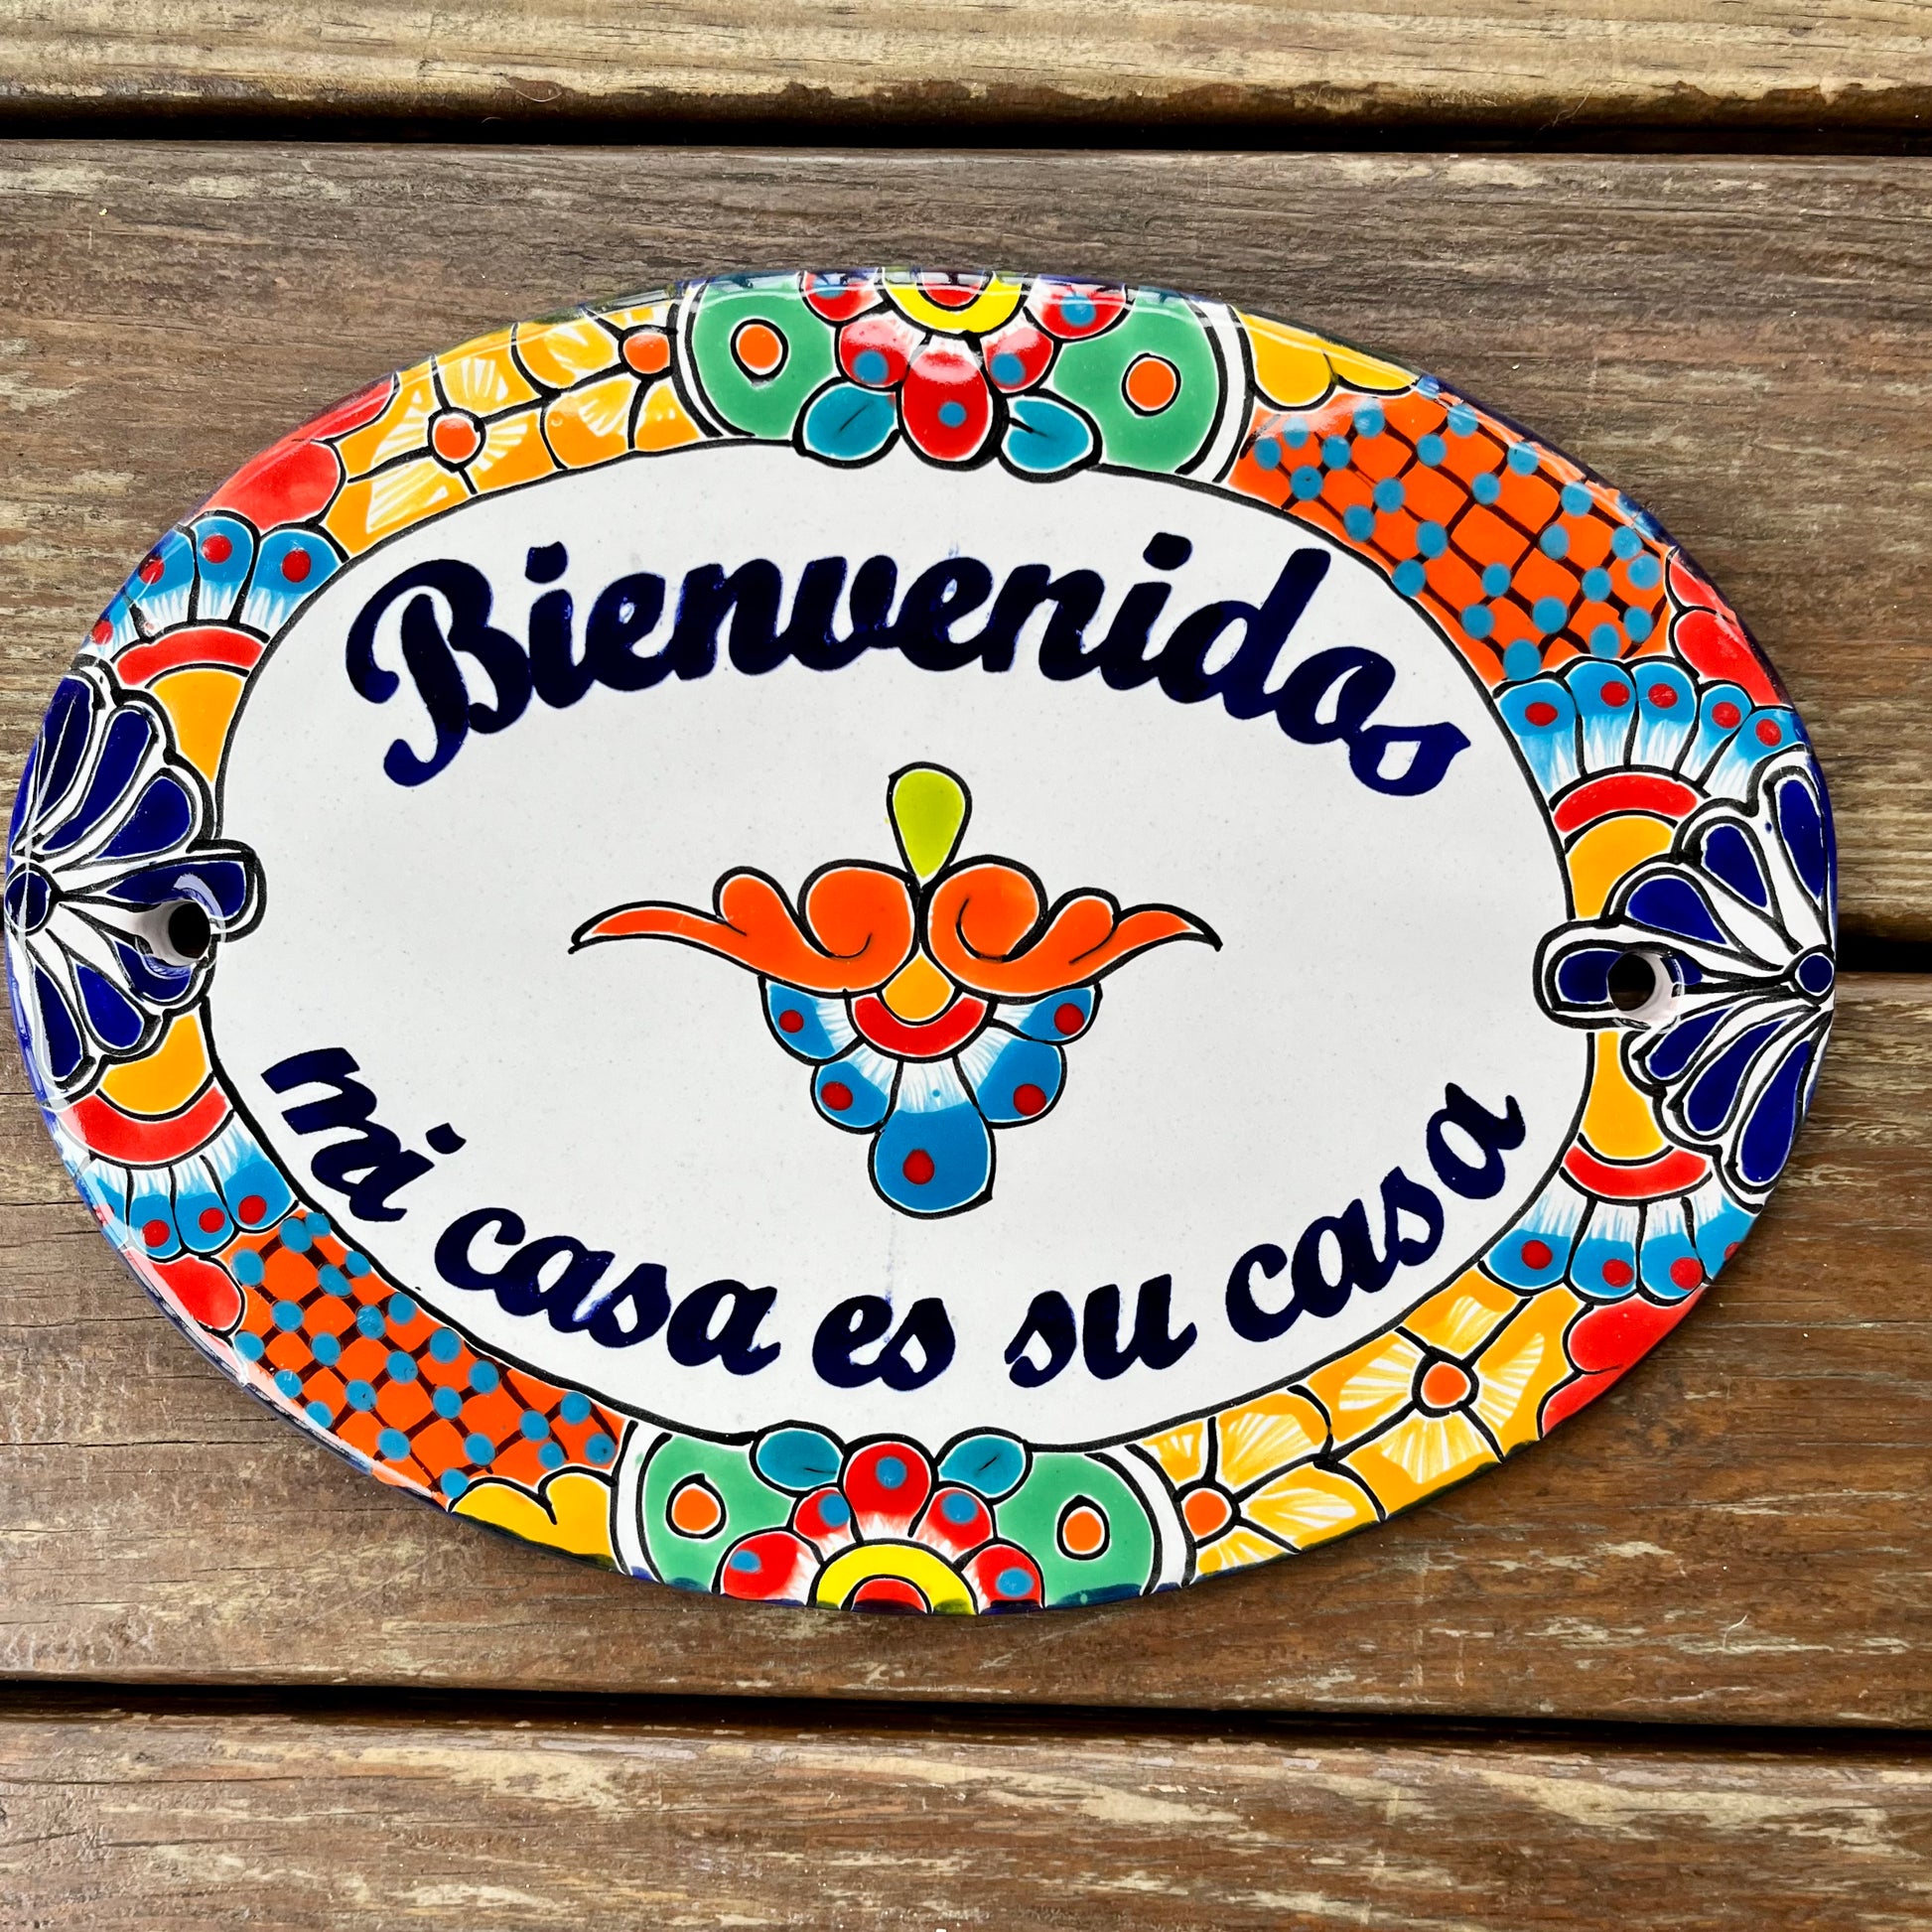 Ceramic Latino Gift Idea Welcome Sign Bienvenidos Amigos Yellow Cact